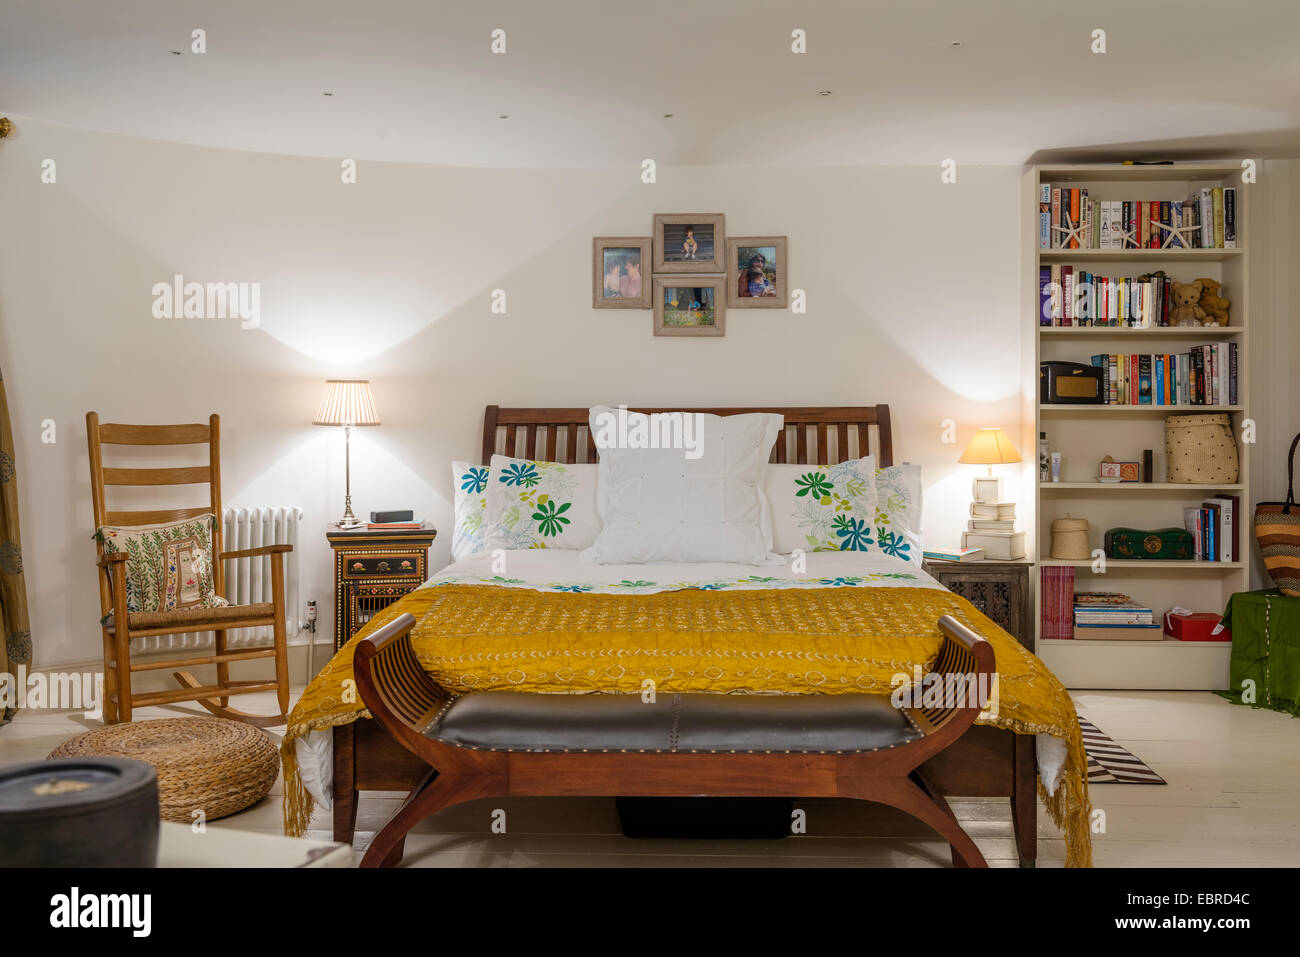 Fauteuil à bascule dans la chambre avec un couvre-lit de soie jaune et bibliothèque Banque D'Images